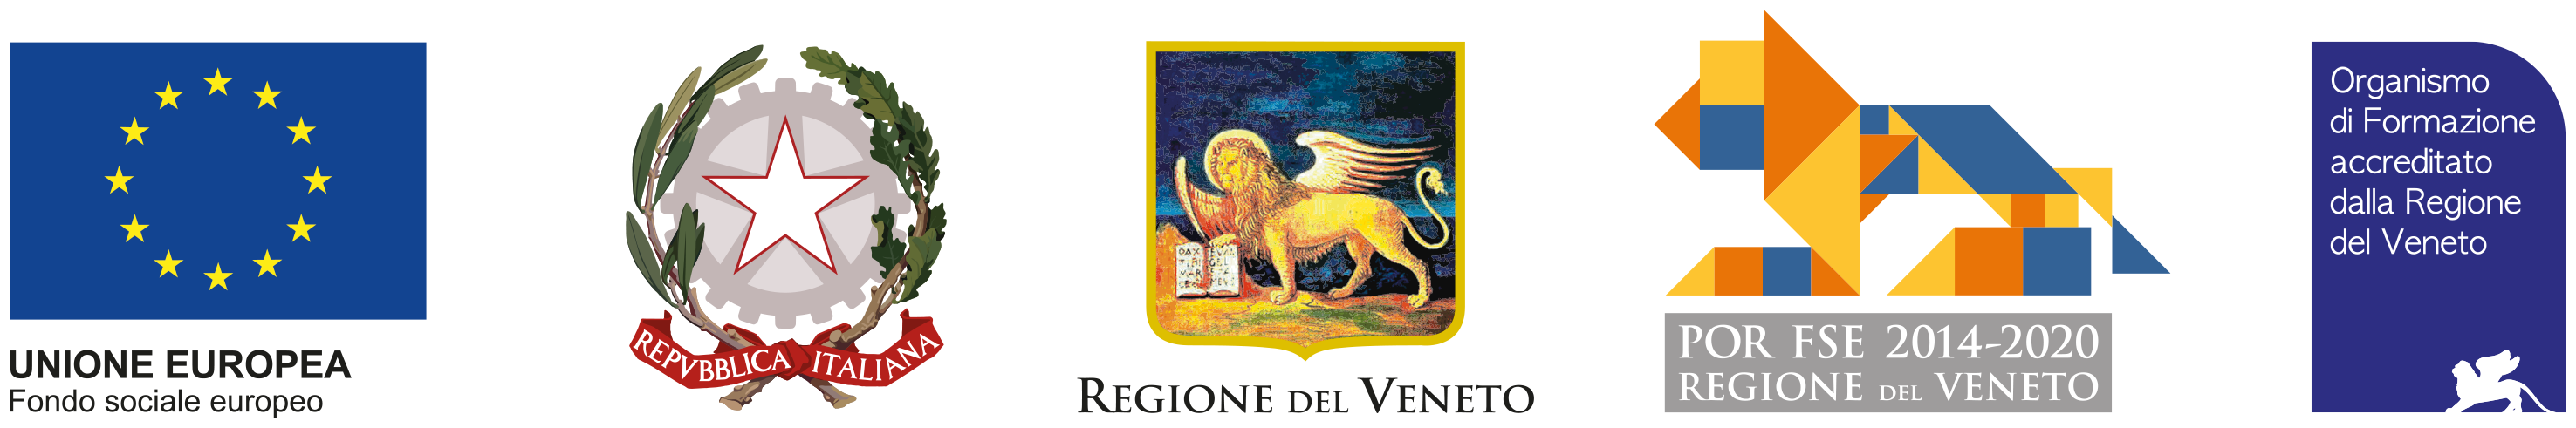 Unione europea, Repubblica Italiana, Regione del Veneto, POR FSE 2014-2020, Organismo di formazione accreditato dalla Regione Veneto